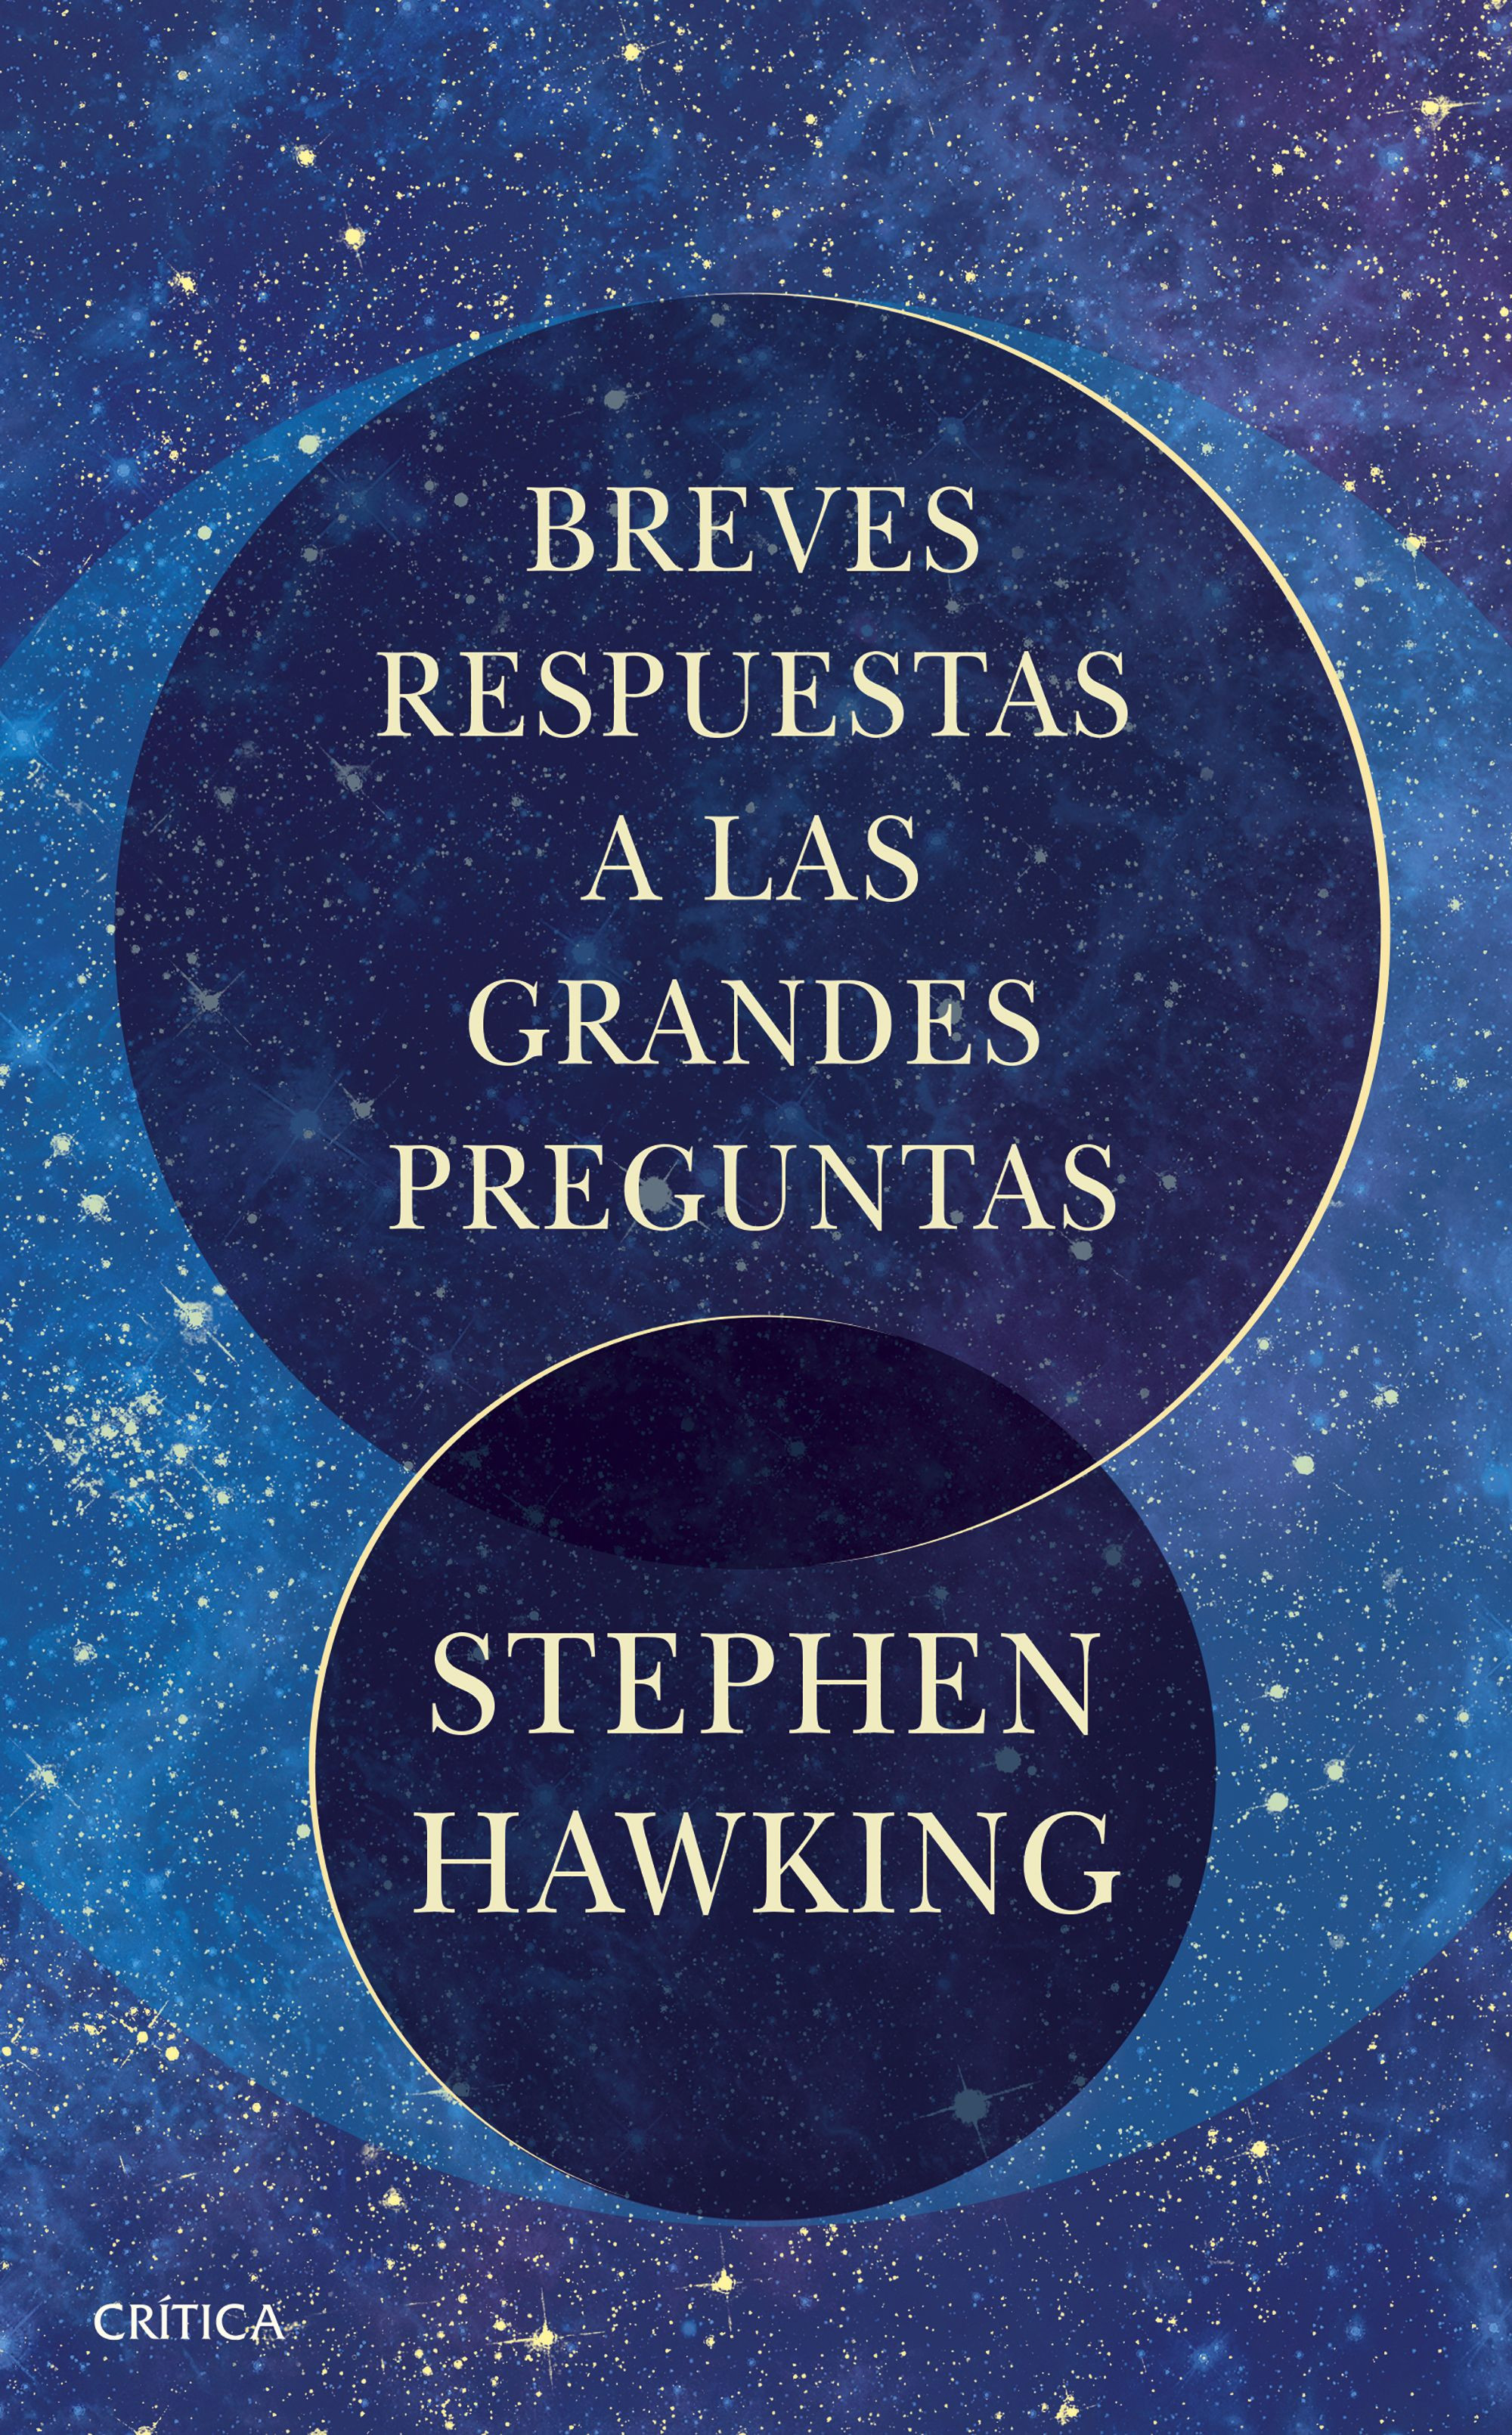 Imagen Breves Respuestas a las Grandes Preguntas. Stephen Hawking 1